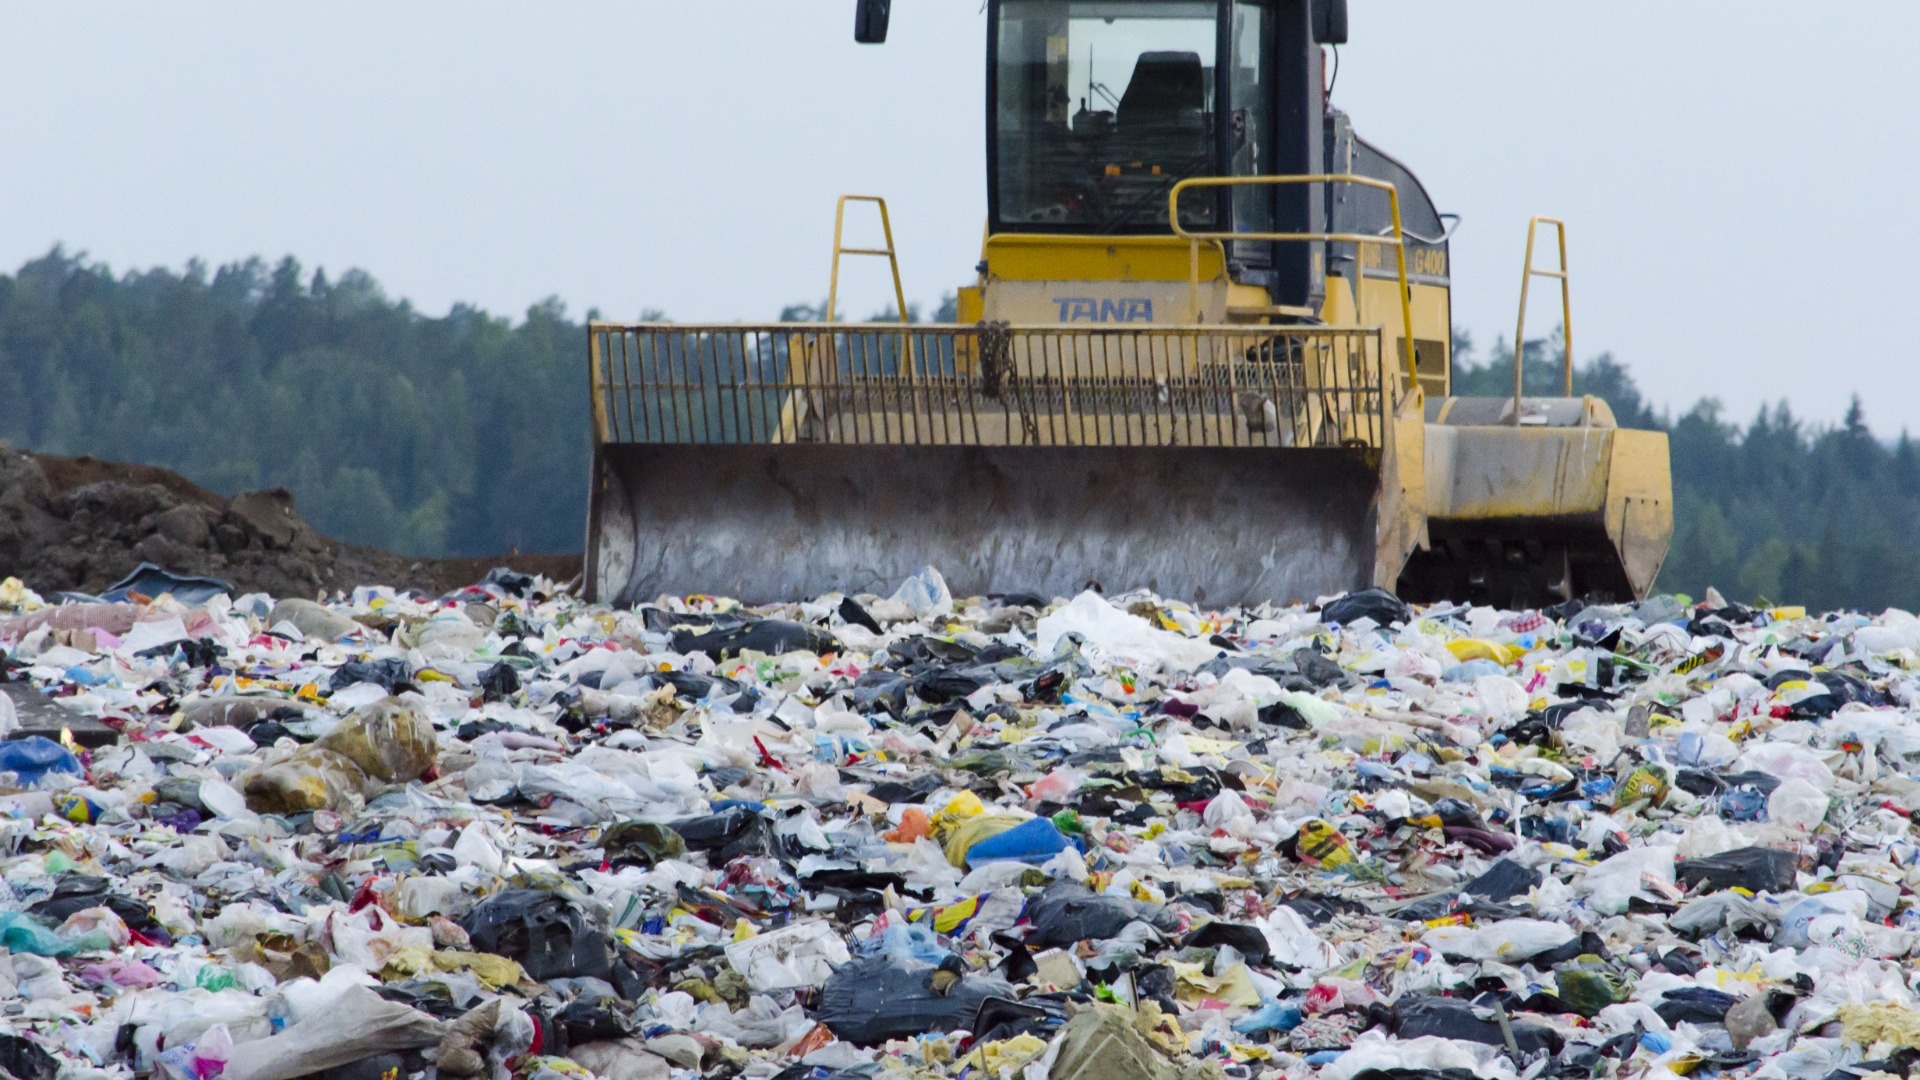 Буцаев: Комплекс по переработке отходов за 3 млрд рублей построят в Калужской области